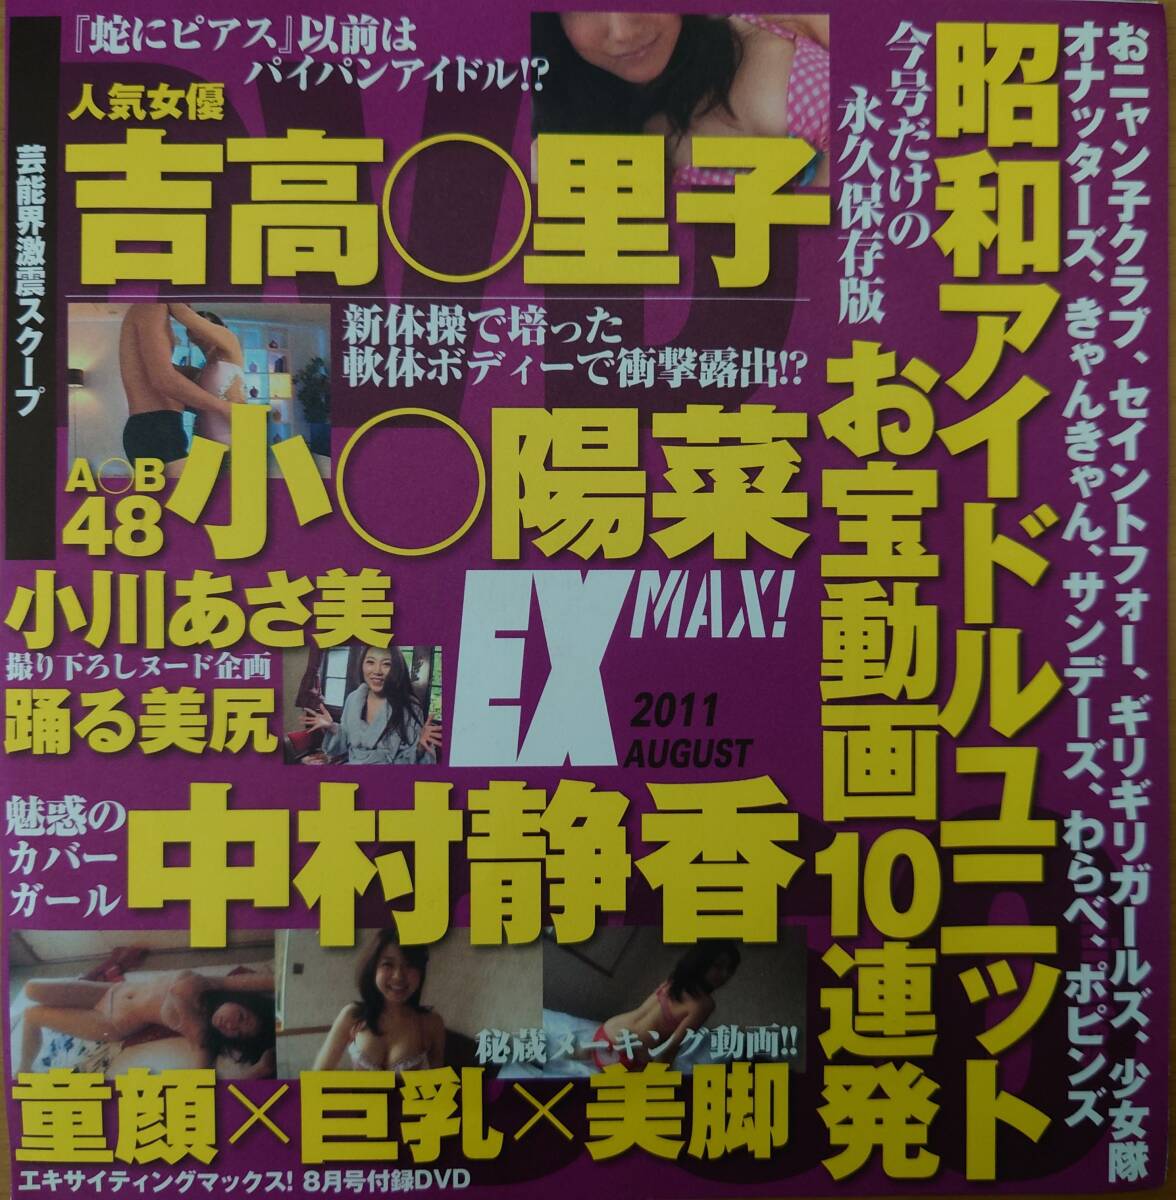 【中村静香】EX MAX(エキサイティングマックス) 2011年8月 付録DVDの画像1